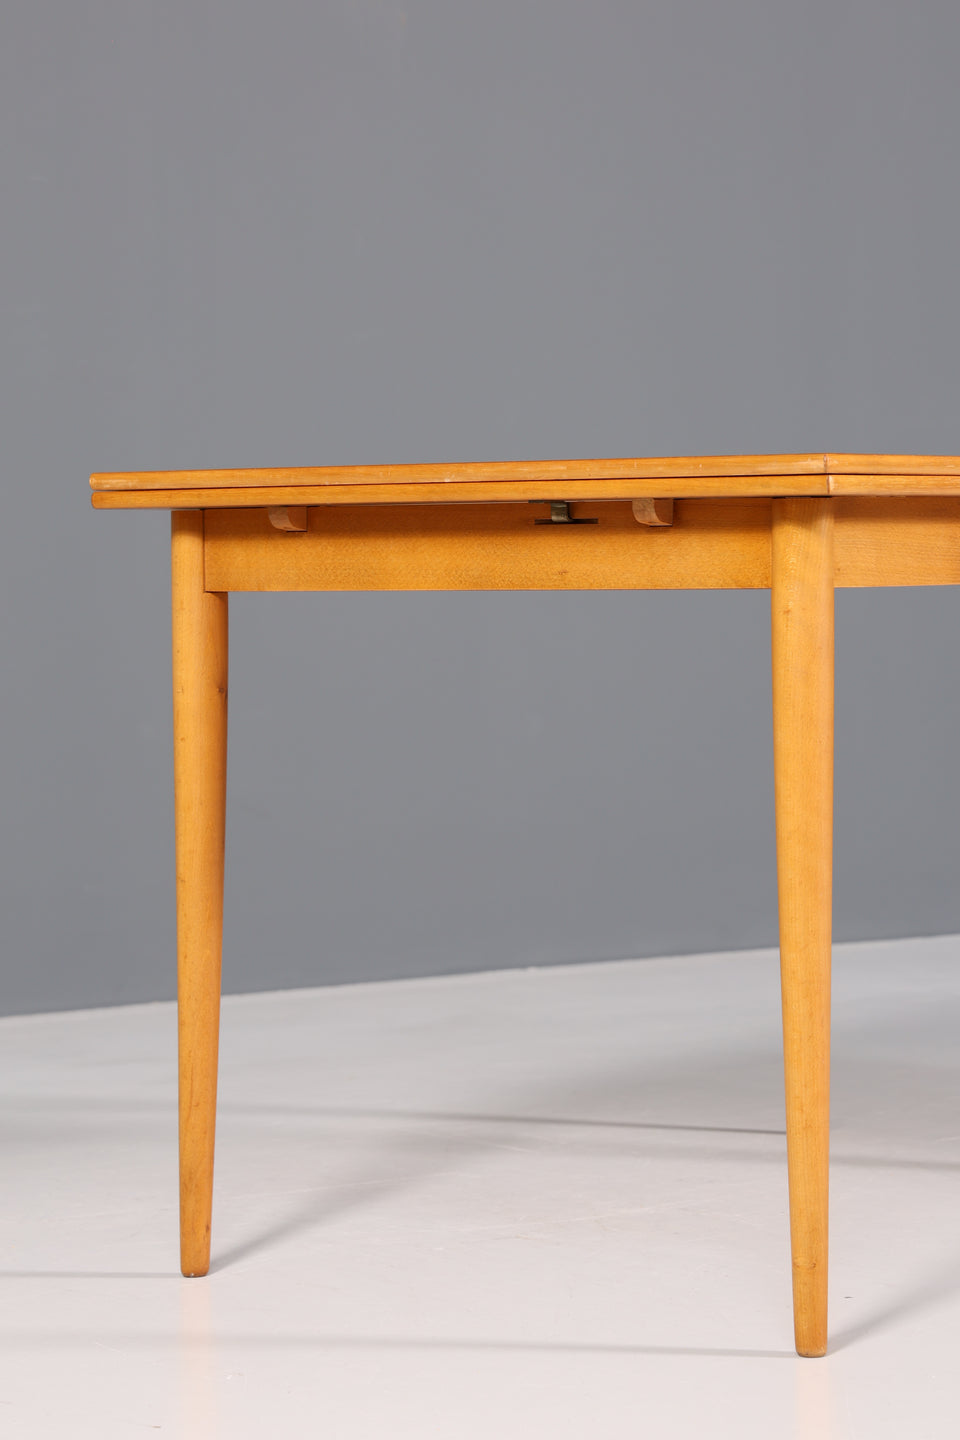 Wunderschöner Mid Century Tisch Danish Design Esstisch ausziehbarer Teak Holz Küchentisch Esszimmer Tisch Danish Design